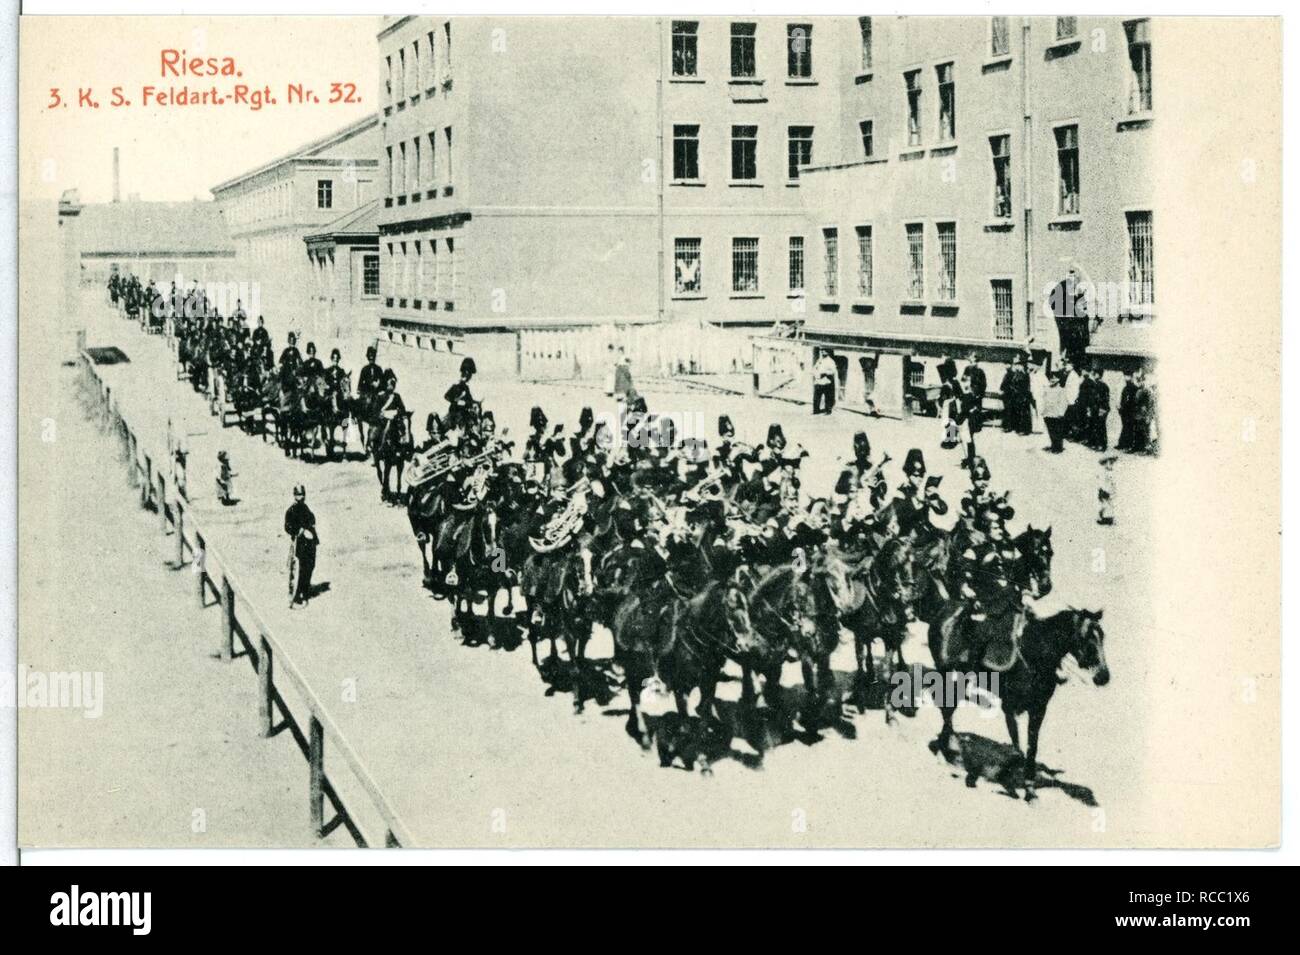 11758-Riesa-1910-3. Königlich Sächsisches Feldartillerie-Regiment Nr. 32- Stock Photo